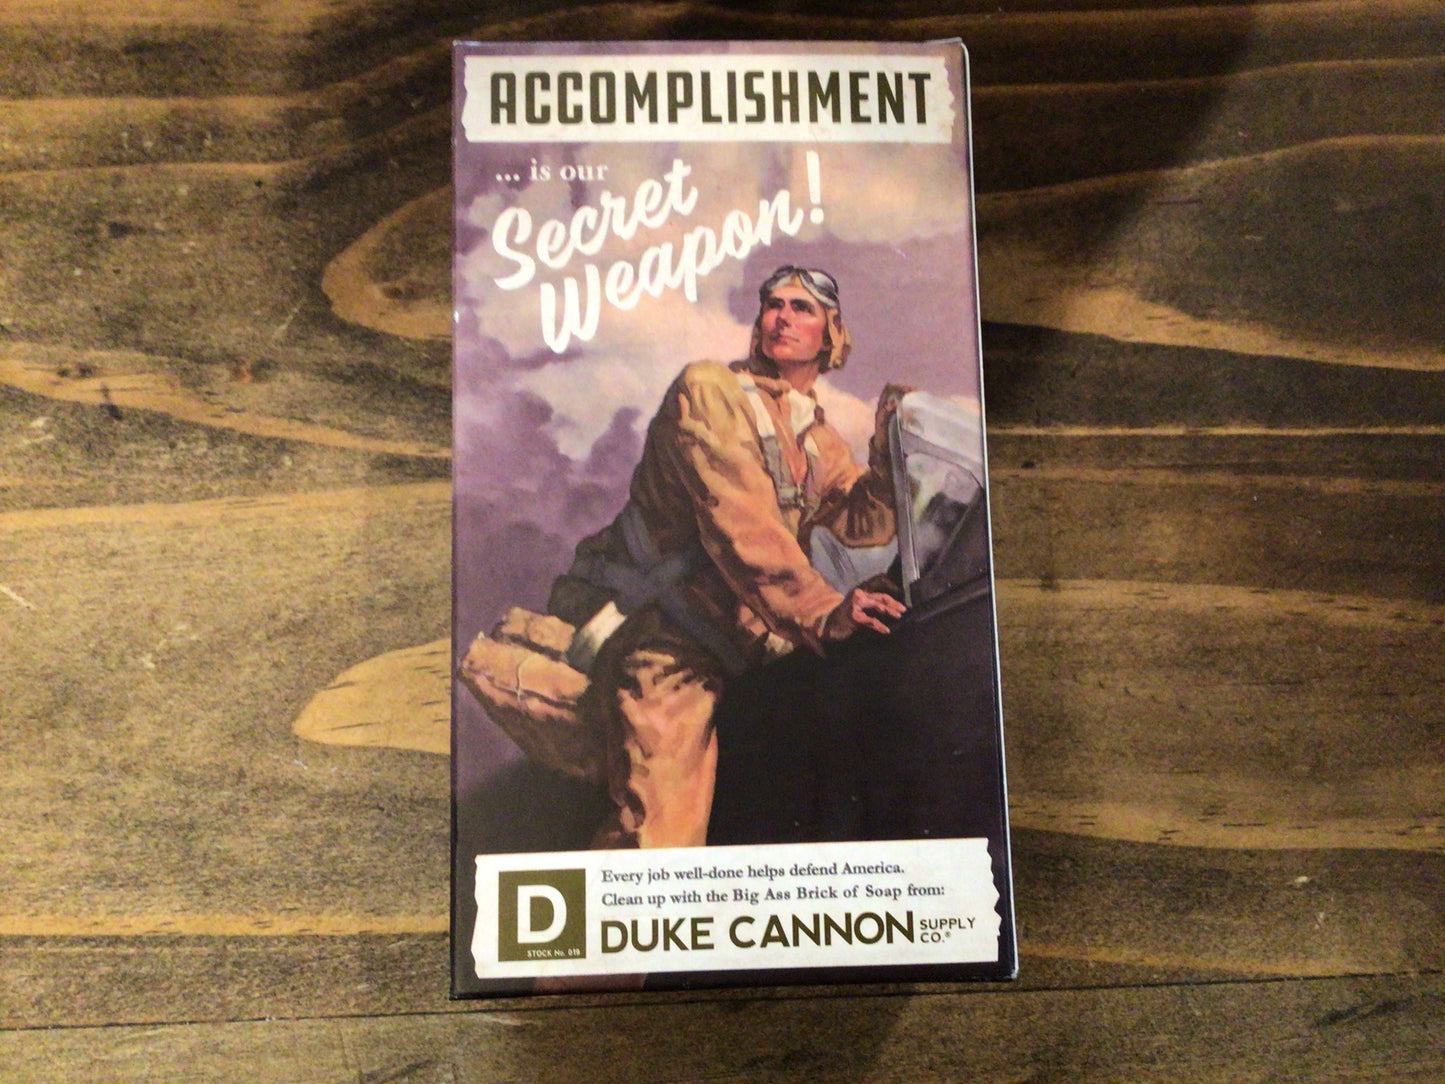 Duke Cannon Soaps